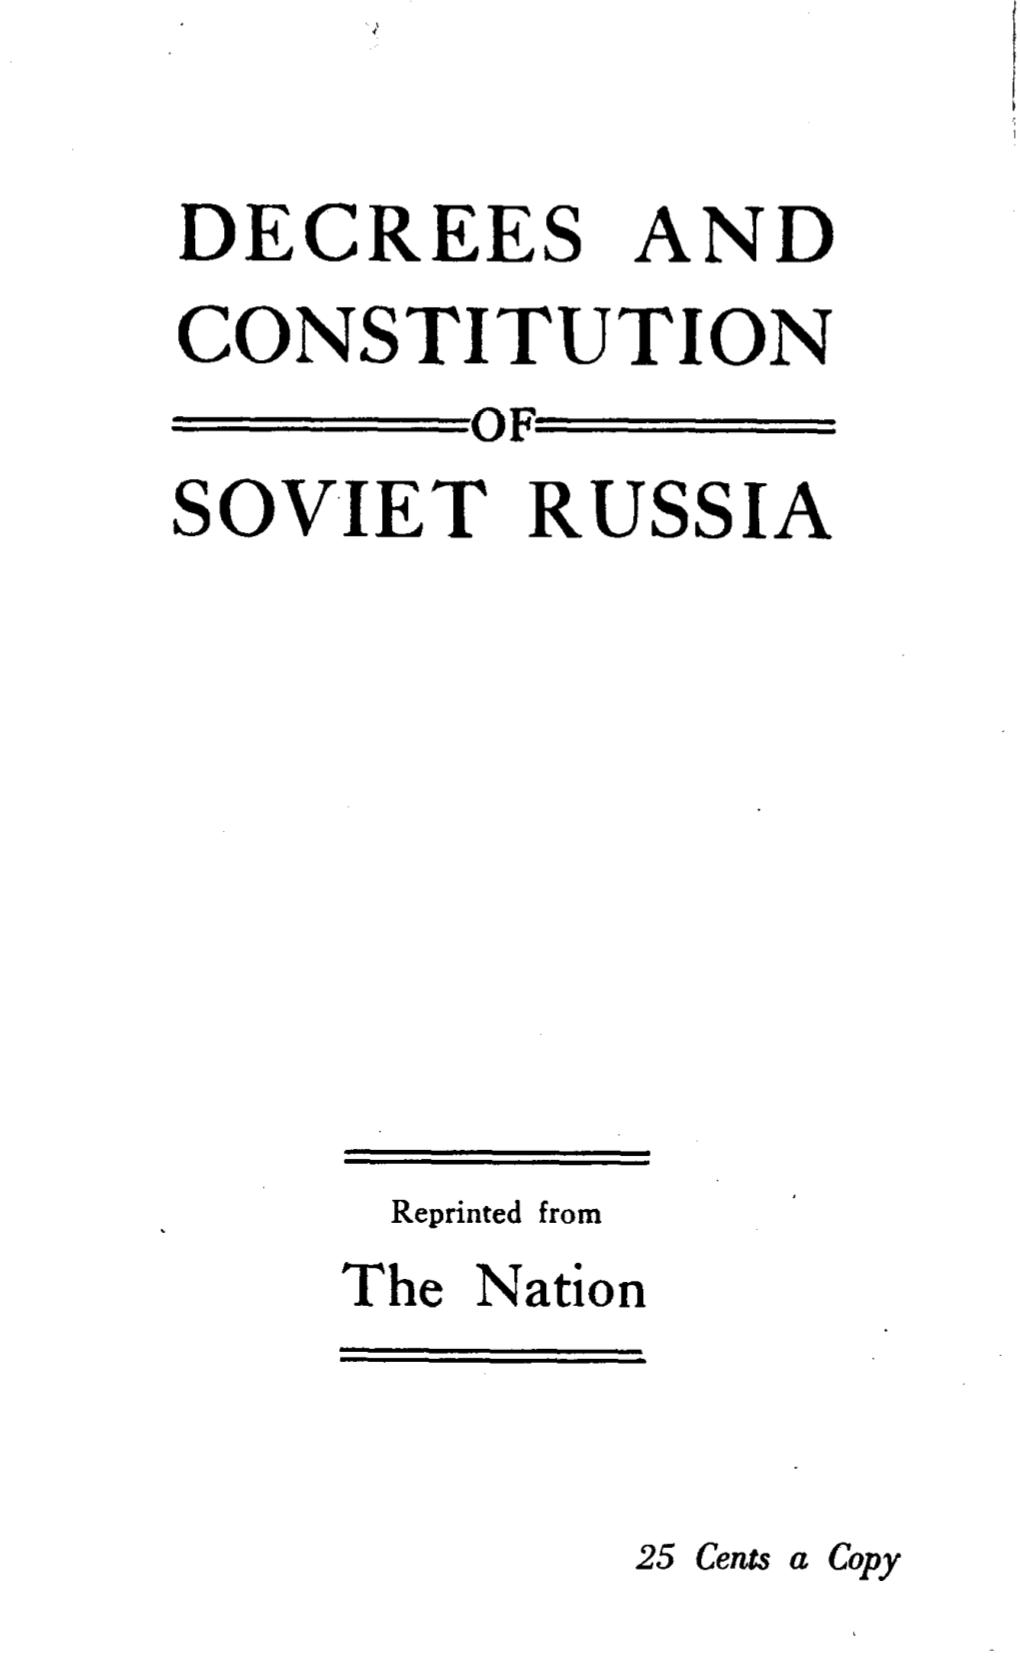 Decrees and Constitution Soviet Russia